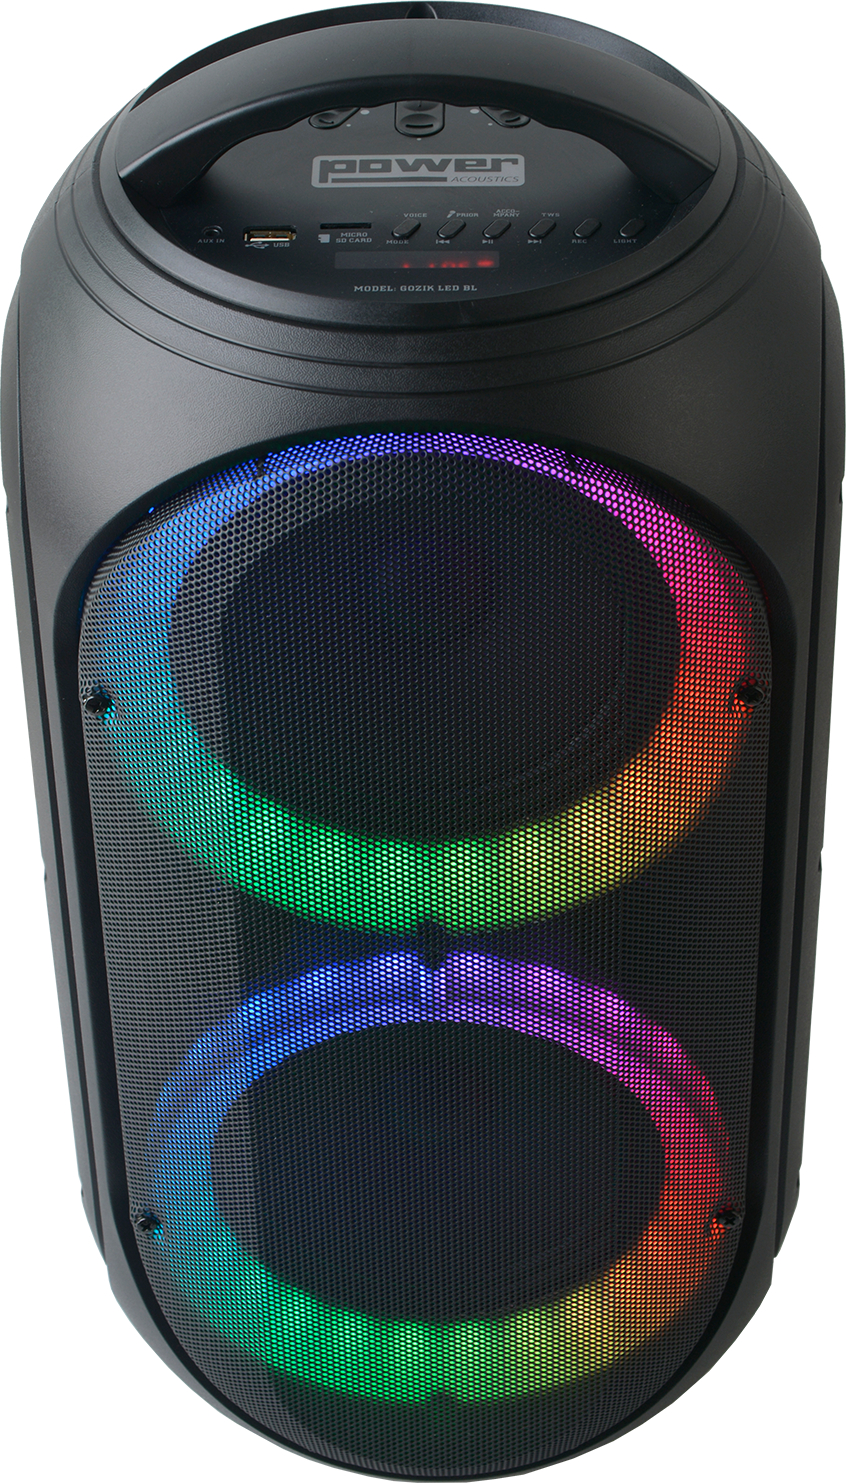 Power Gozik Led Black - Active full-range speaker - Variation 1